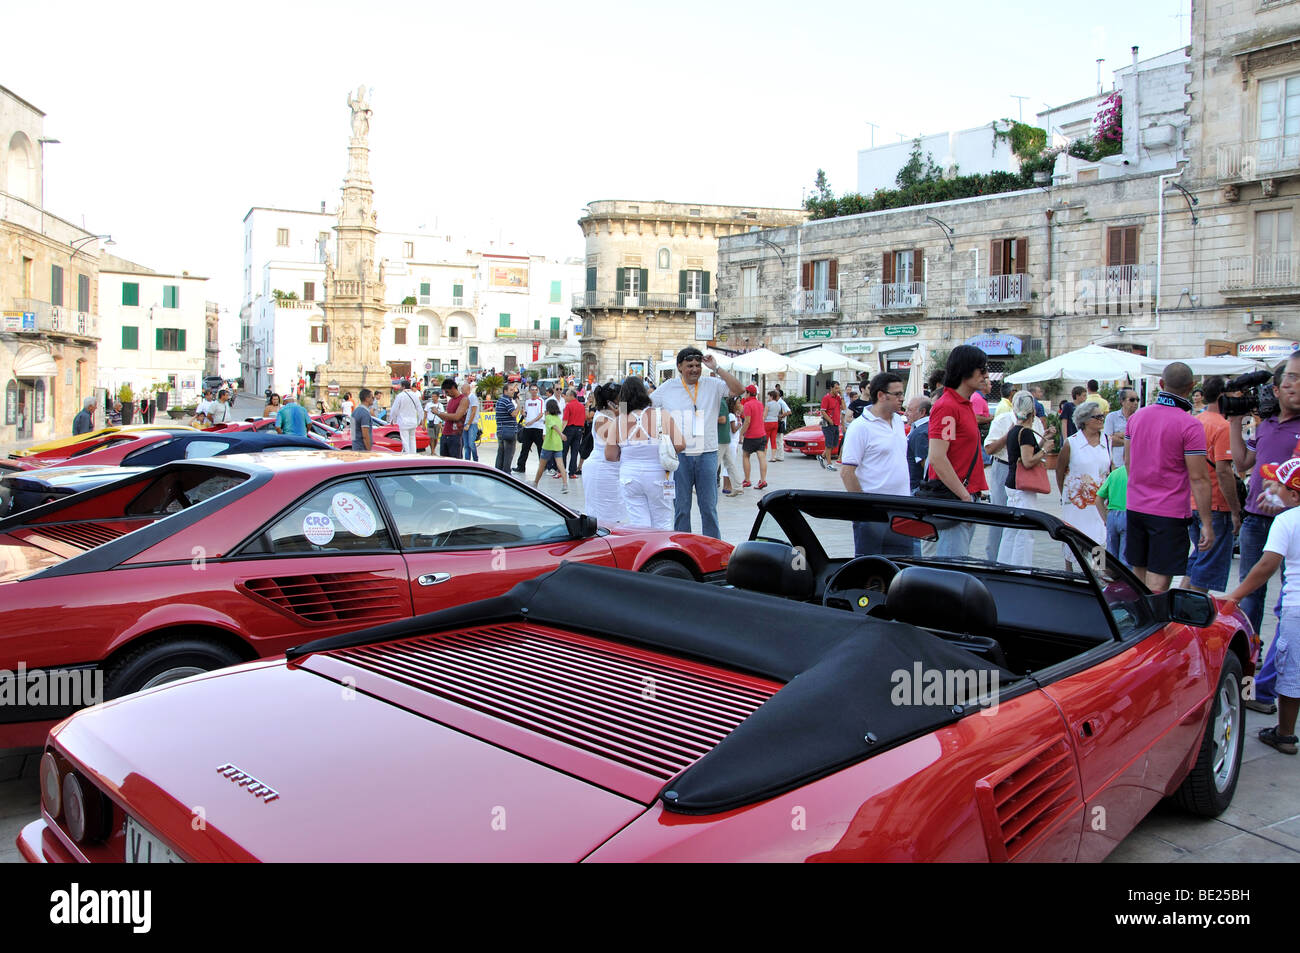 Auto Ferrari festival, Piazza della Liberta, Città Vecchia, Ostuni, provincia di Brindisi Regione Puglia, Italia Foto Stock